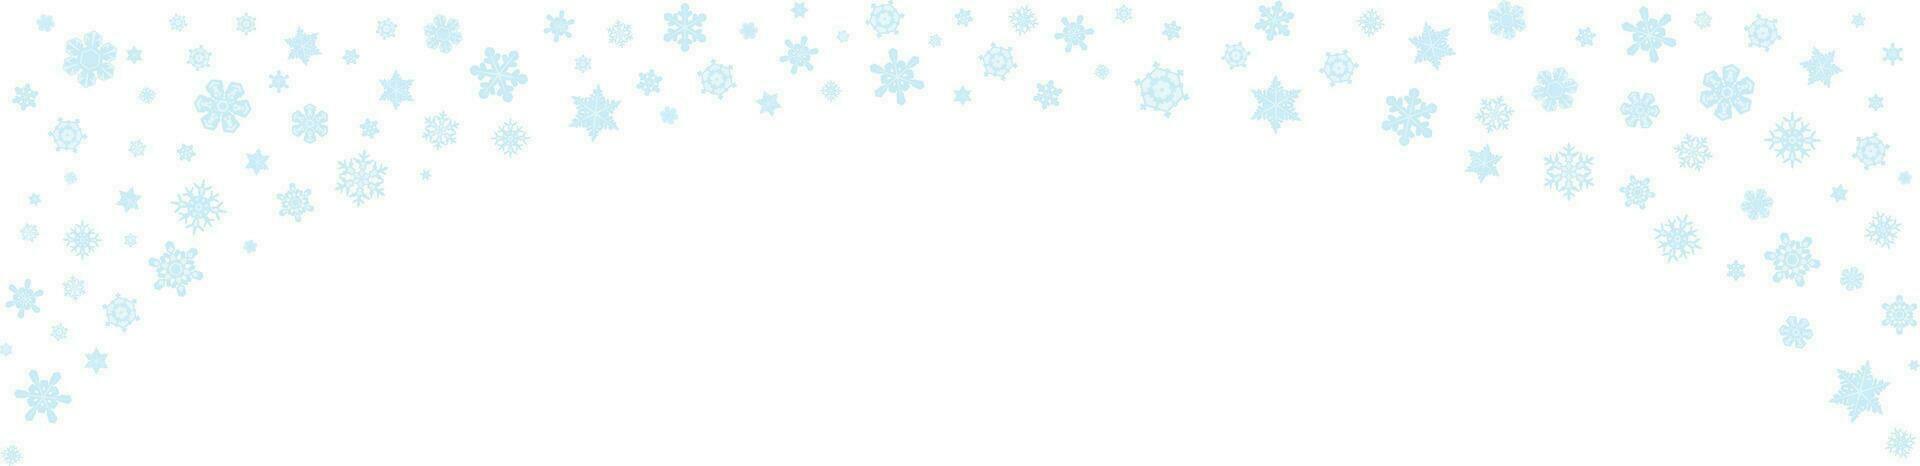 jul mönster med blå snöflingor isolerat på vit bakgrund. upphöja din jul mönster med detta fängslande vektor illustration av en mönster Utsmyckad med blå snöflingor